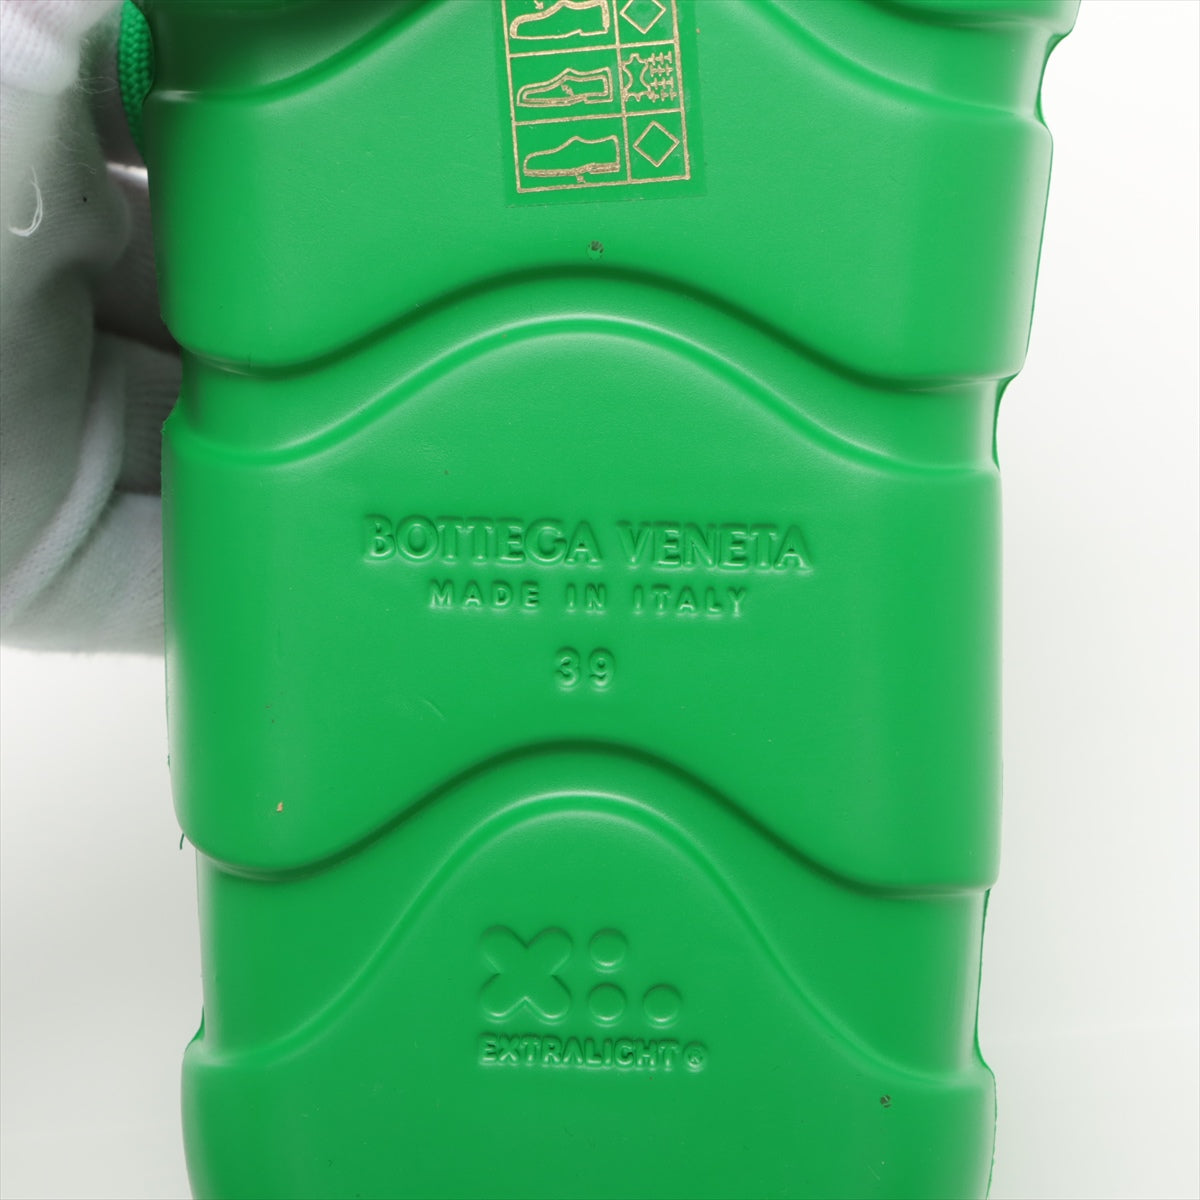 Bottega Veneta Laver 運動鞋 39 綠色 CLIMBER 盒裝瓶